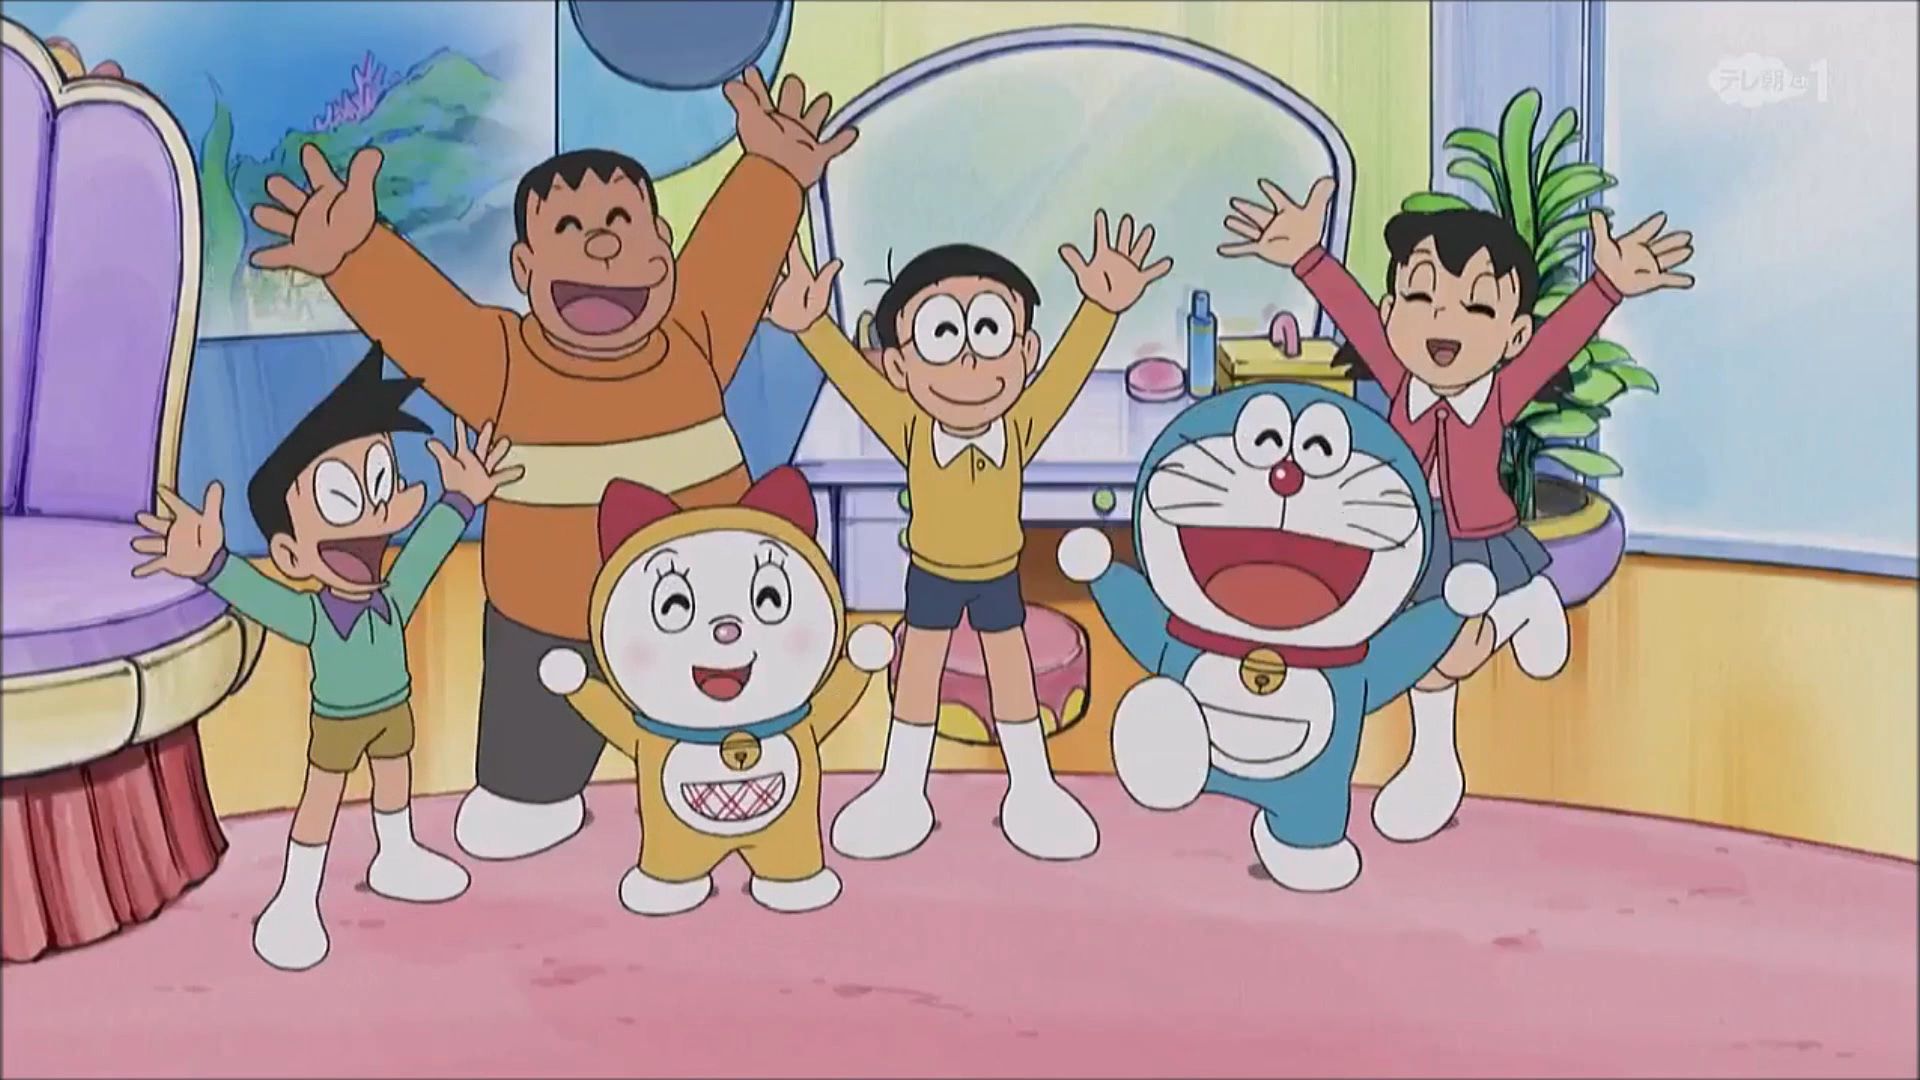 Doraemon Wiki là thế giới của những thông tin bổ ích về chú mèo máy đáng yêu nhất mọi thời đại. Tại đây, bạn có thể tìm hiểu về các nhân vật, câu chuyện và nhiều chi tiết khác về loạt truyện soạn thảo nổi tiếng này. Hãy truy cập ngay vào Doraemon Wiki và khám phá thế giới bí ẩn này.